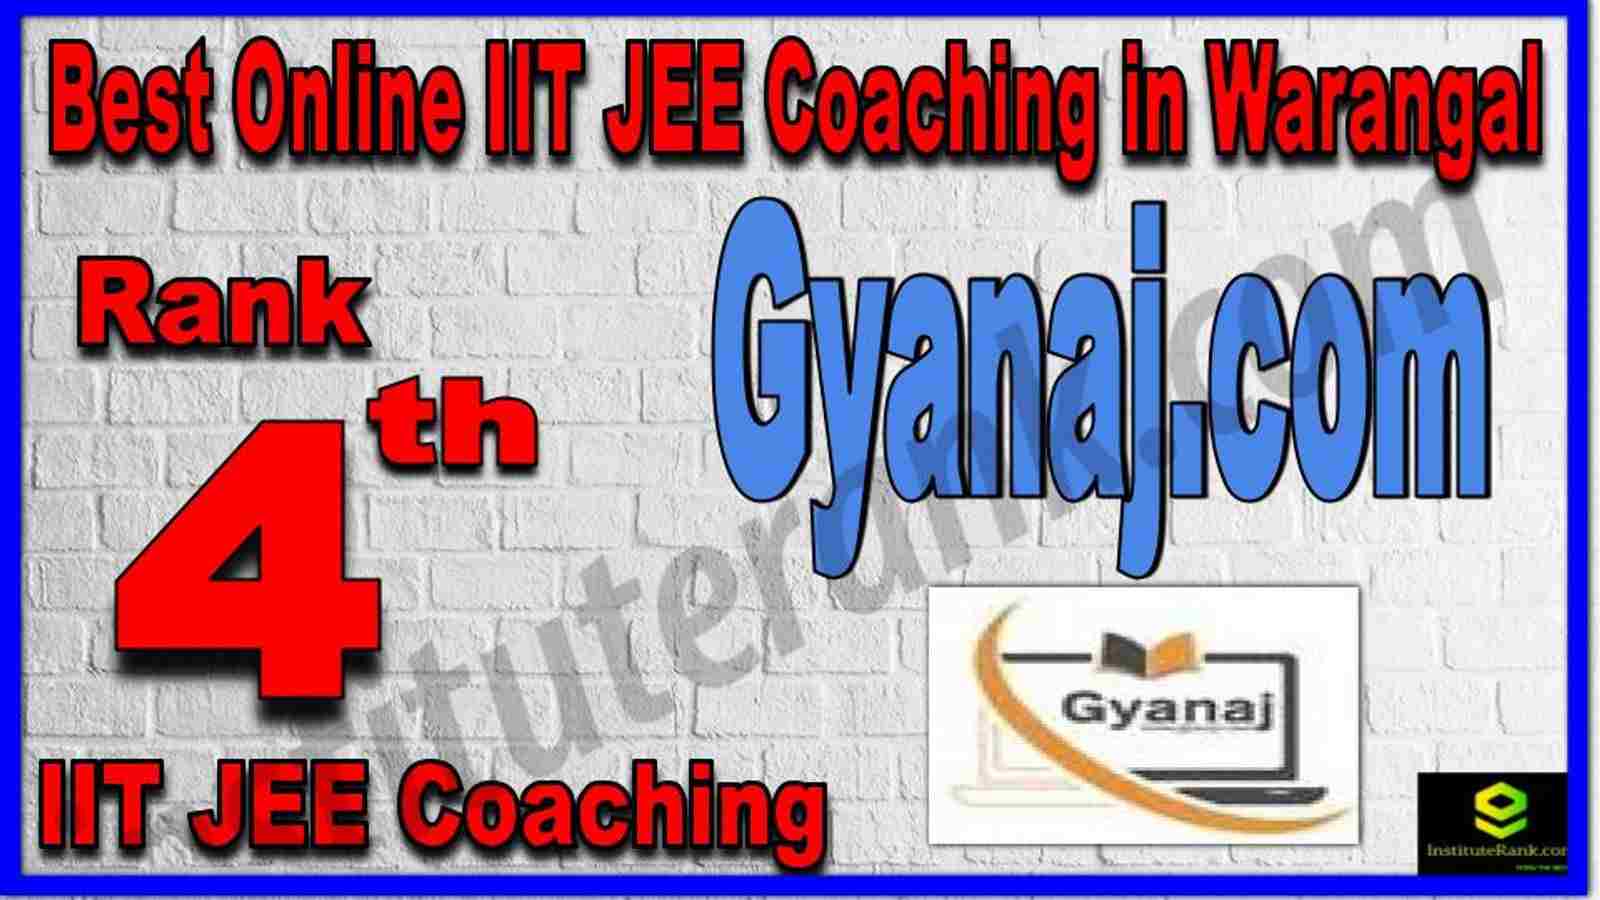 Rank 4th Best Online IIT JEE Coaching in Warangal